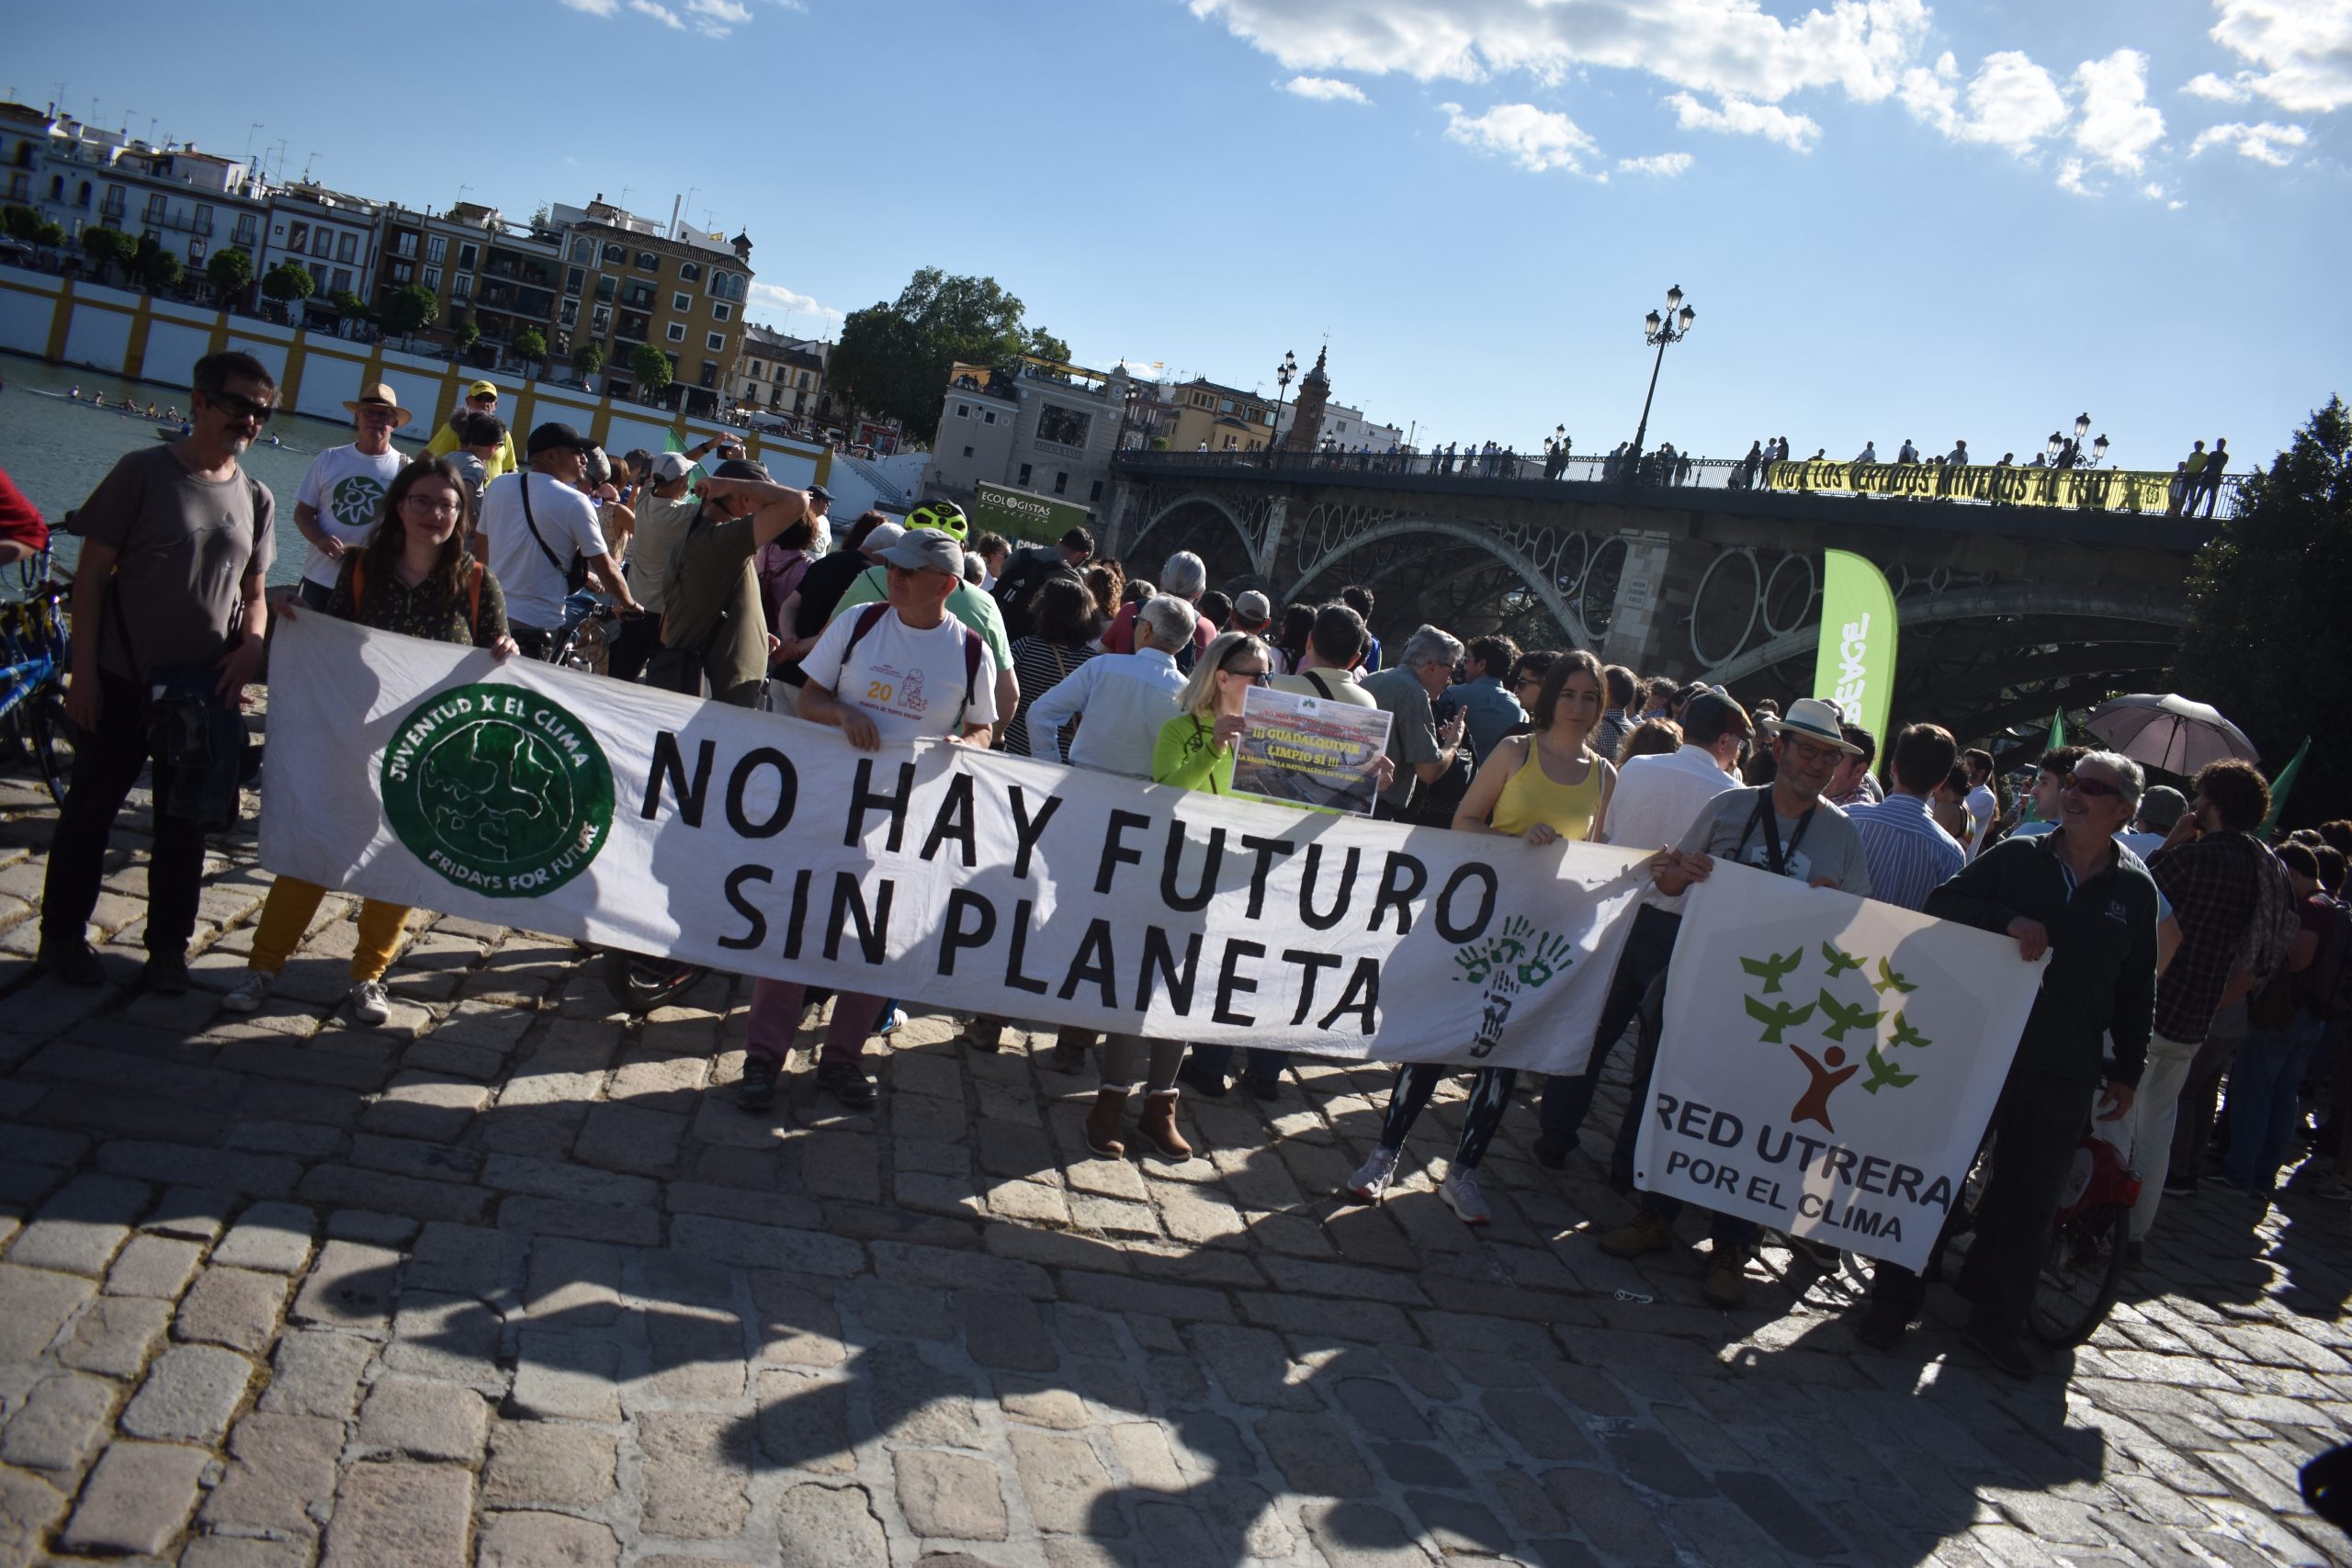 "No hay futuro sin planeta". Pancarta contra el vertido de residuos mineros de Aznalcóllar en el río Guadalquivir